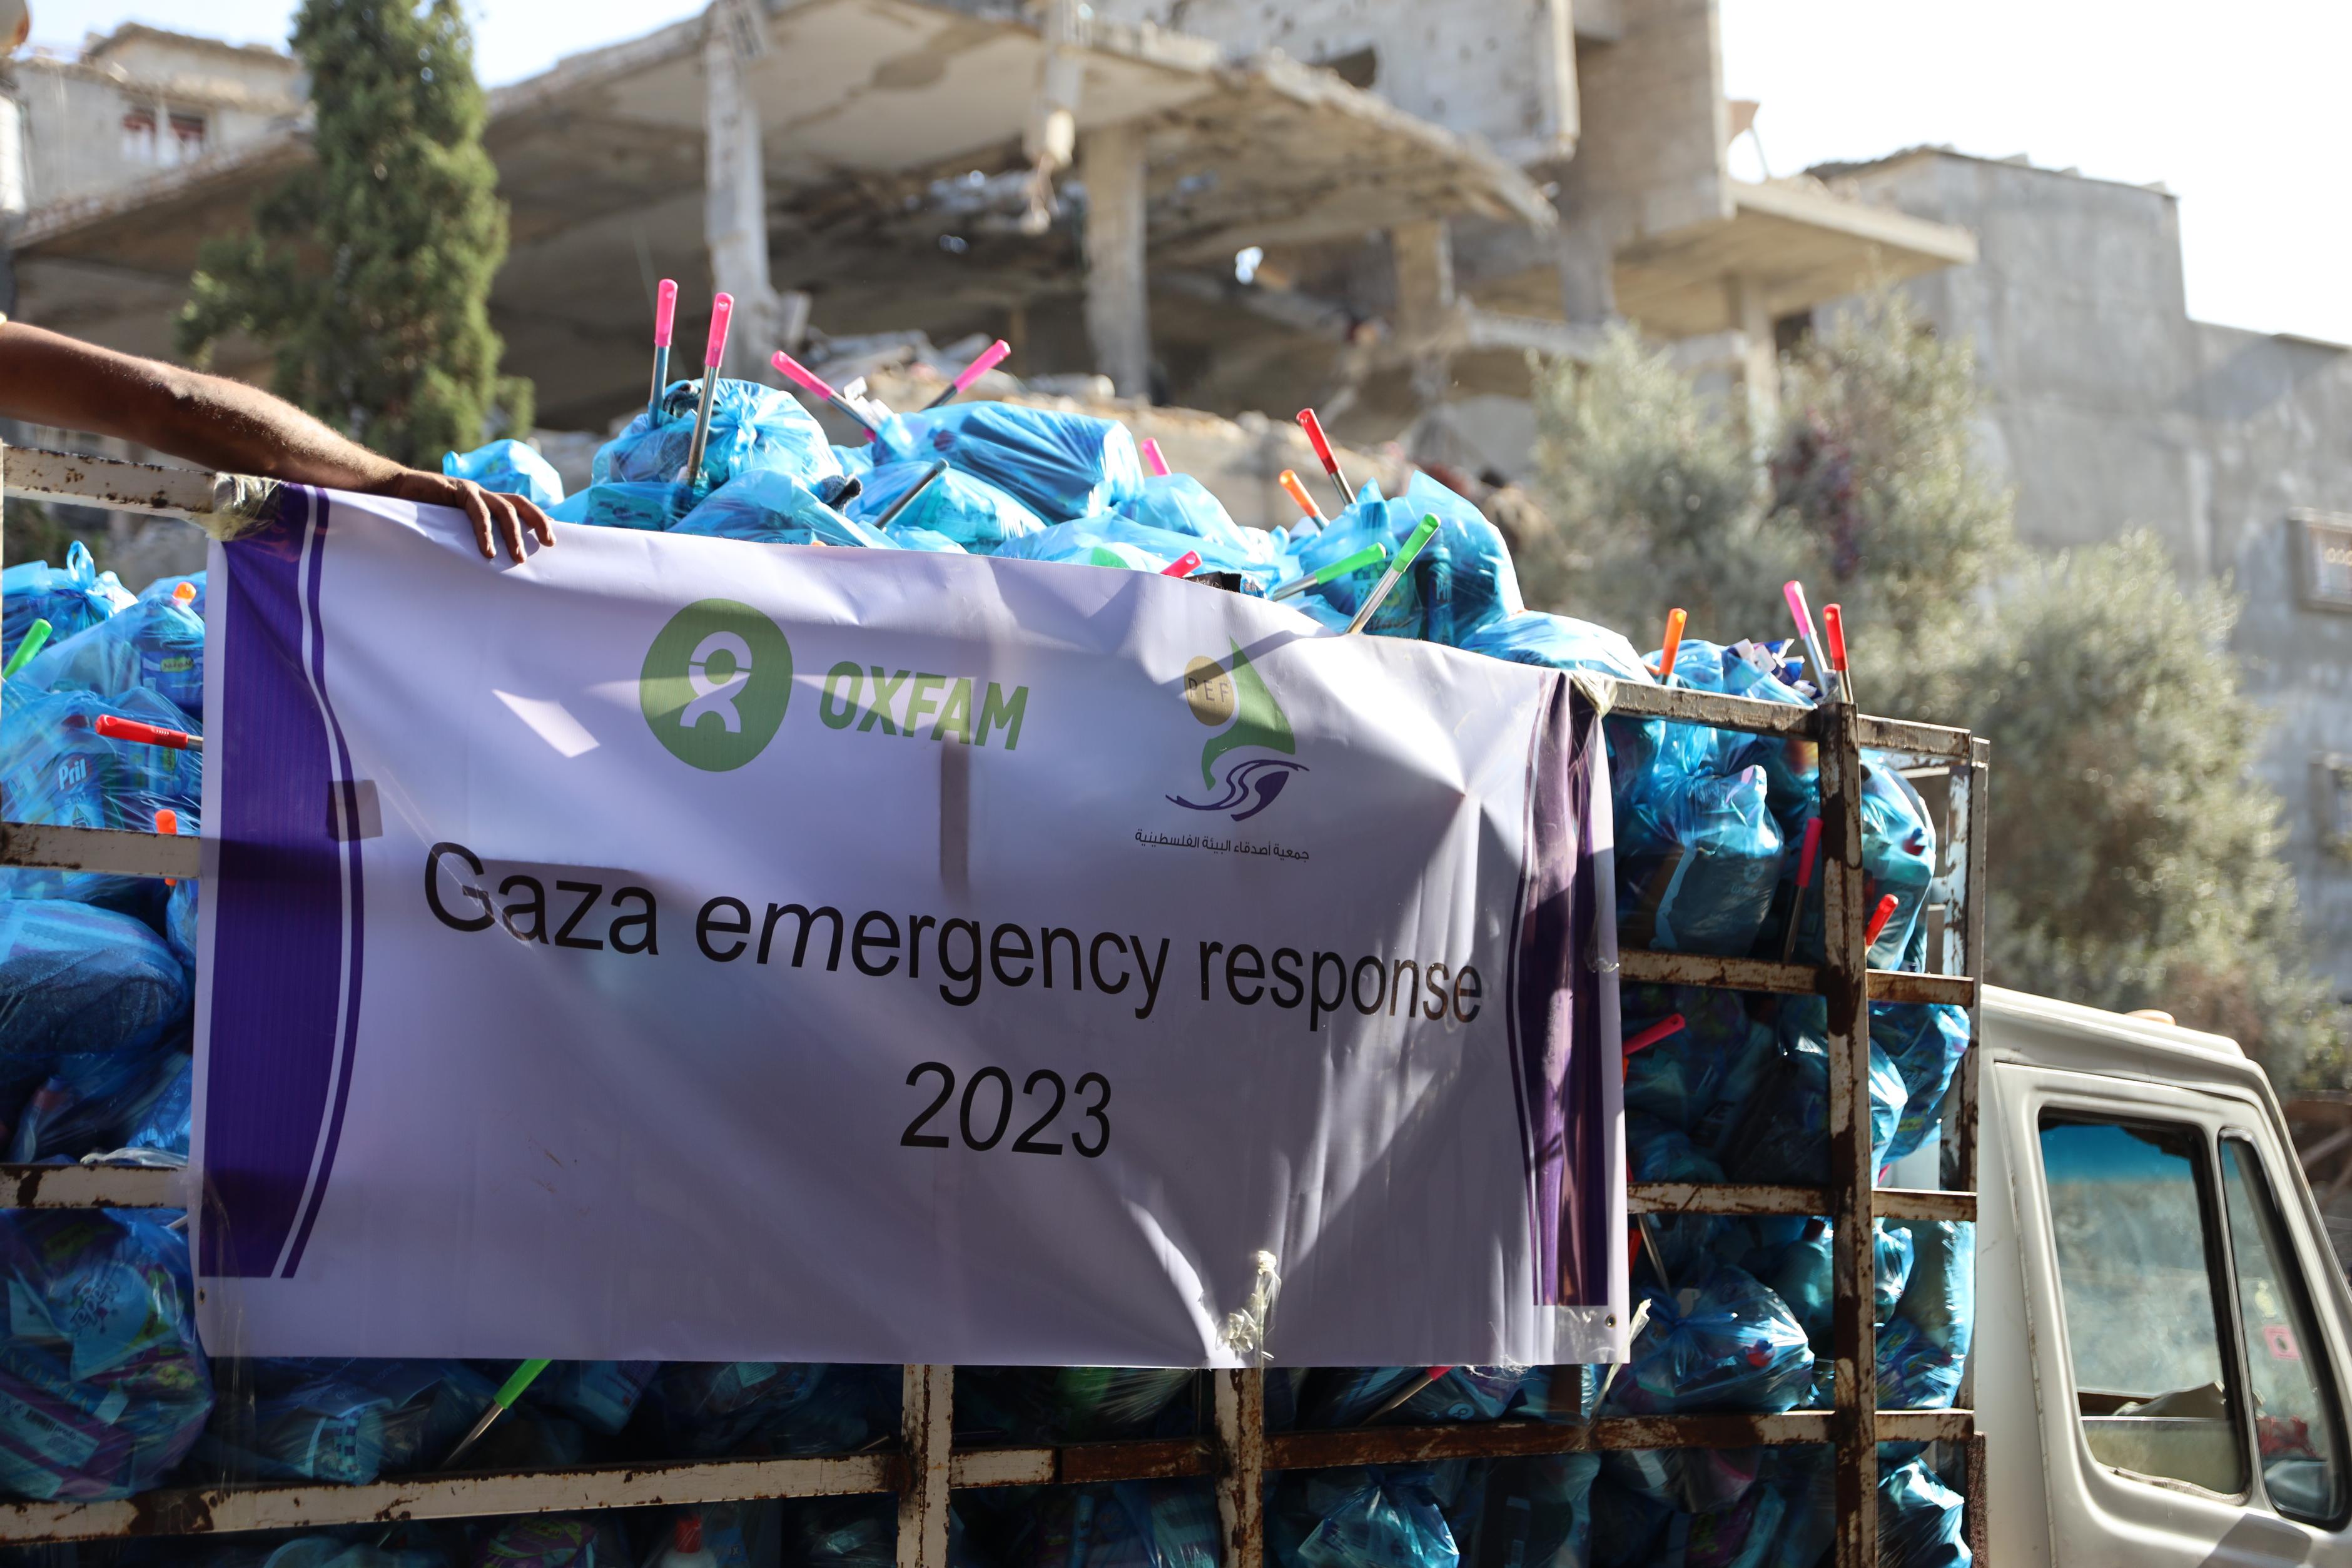 Ein kleiner Lastwagen ist beladen mit blauen Tüten. Auf einem Banner steht "Gaza emergency response"